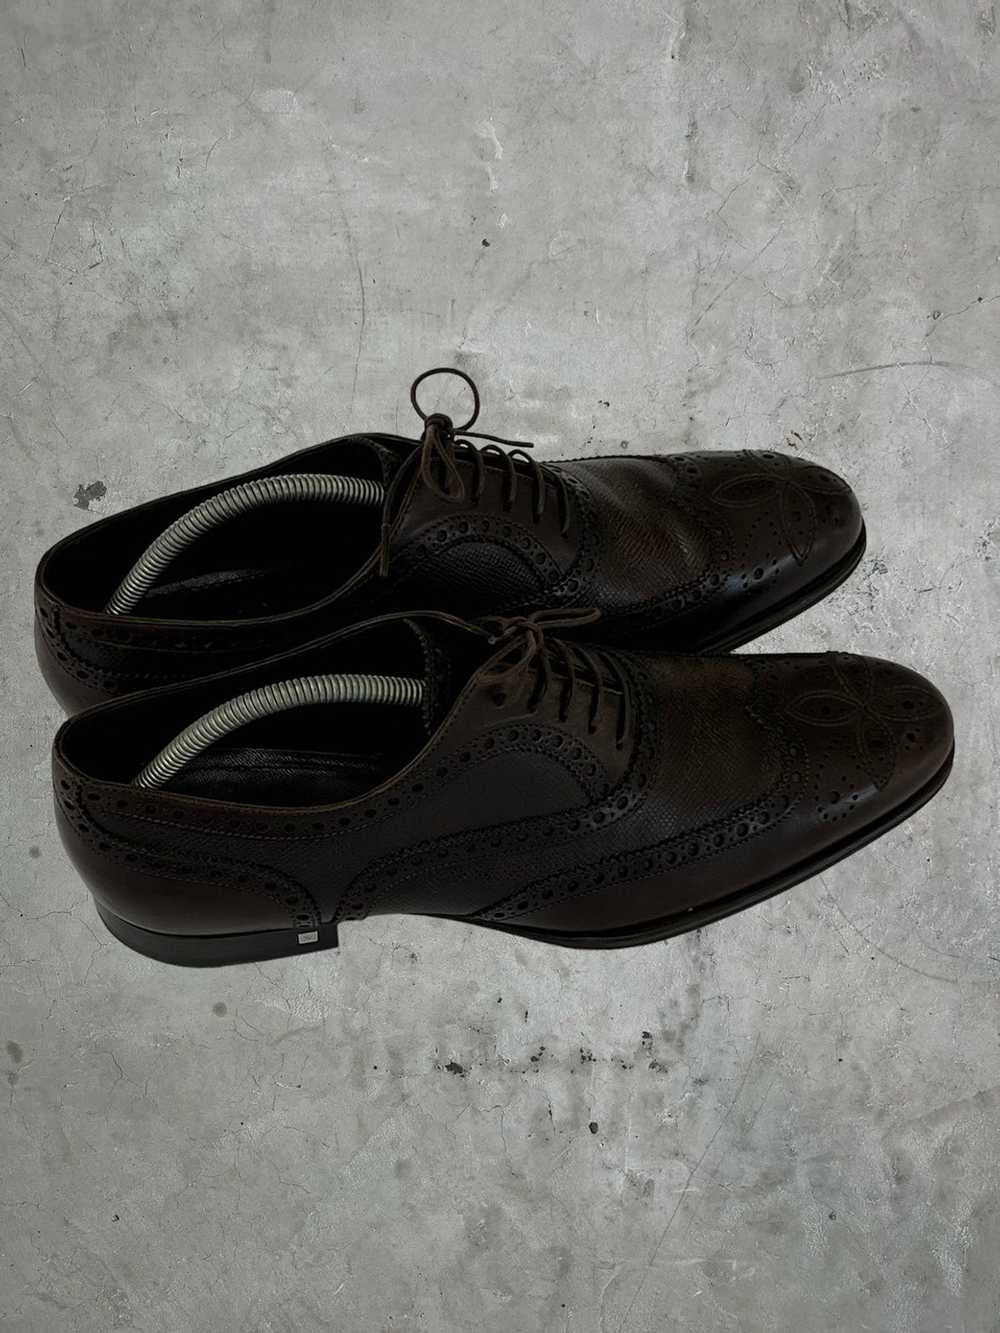 Louis Vuitton Louis Vuitton Detailed Leather Shoes - image 1